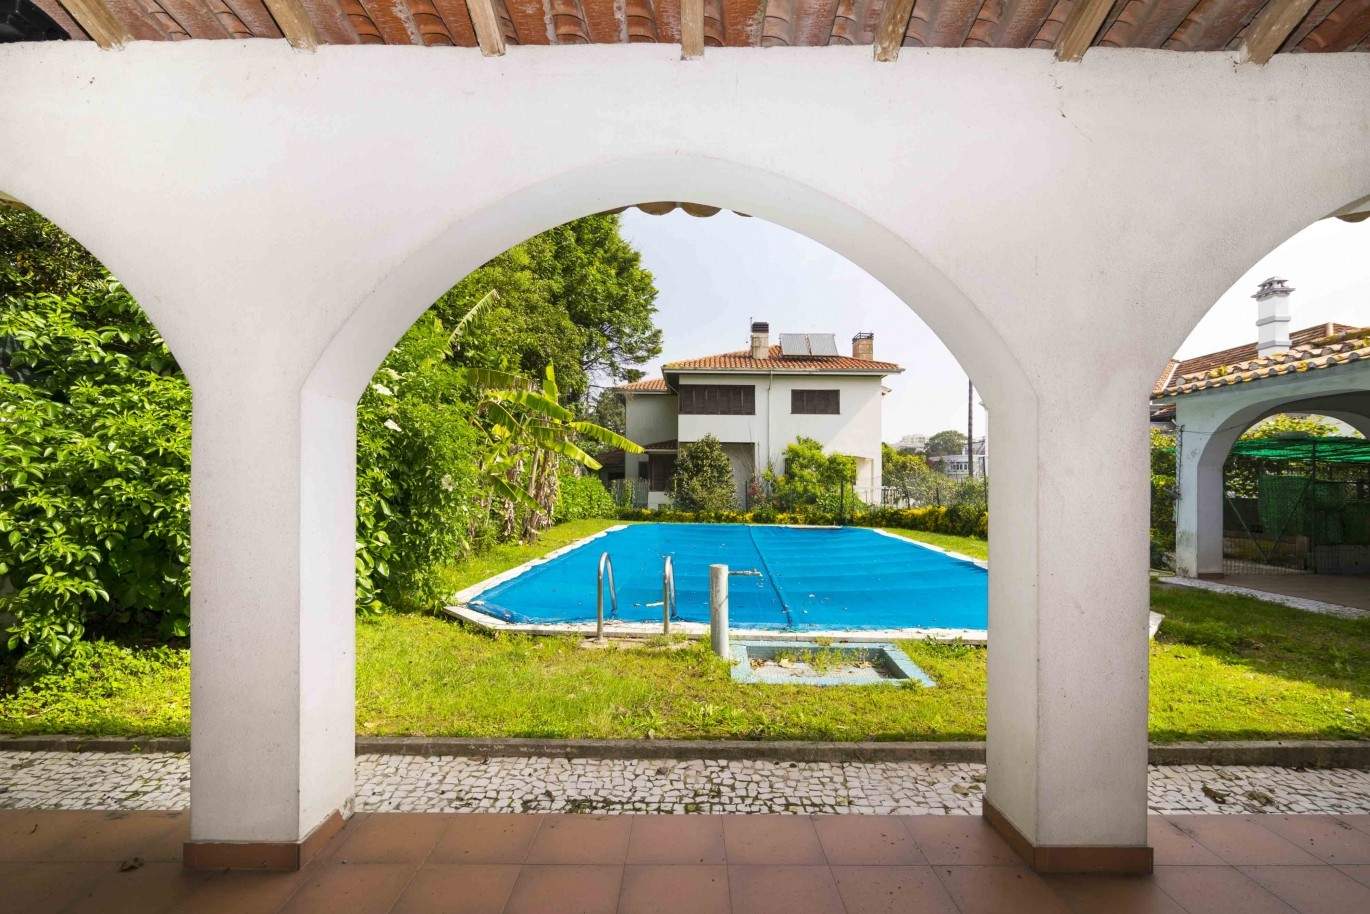 Venda de moradia com jardim e piscina, Boavista, Porto, Portugal_29670